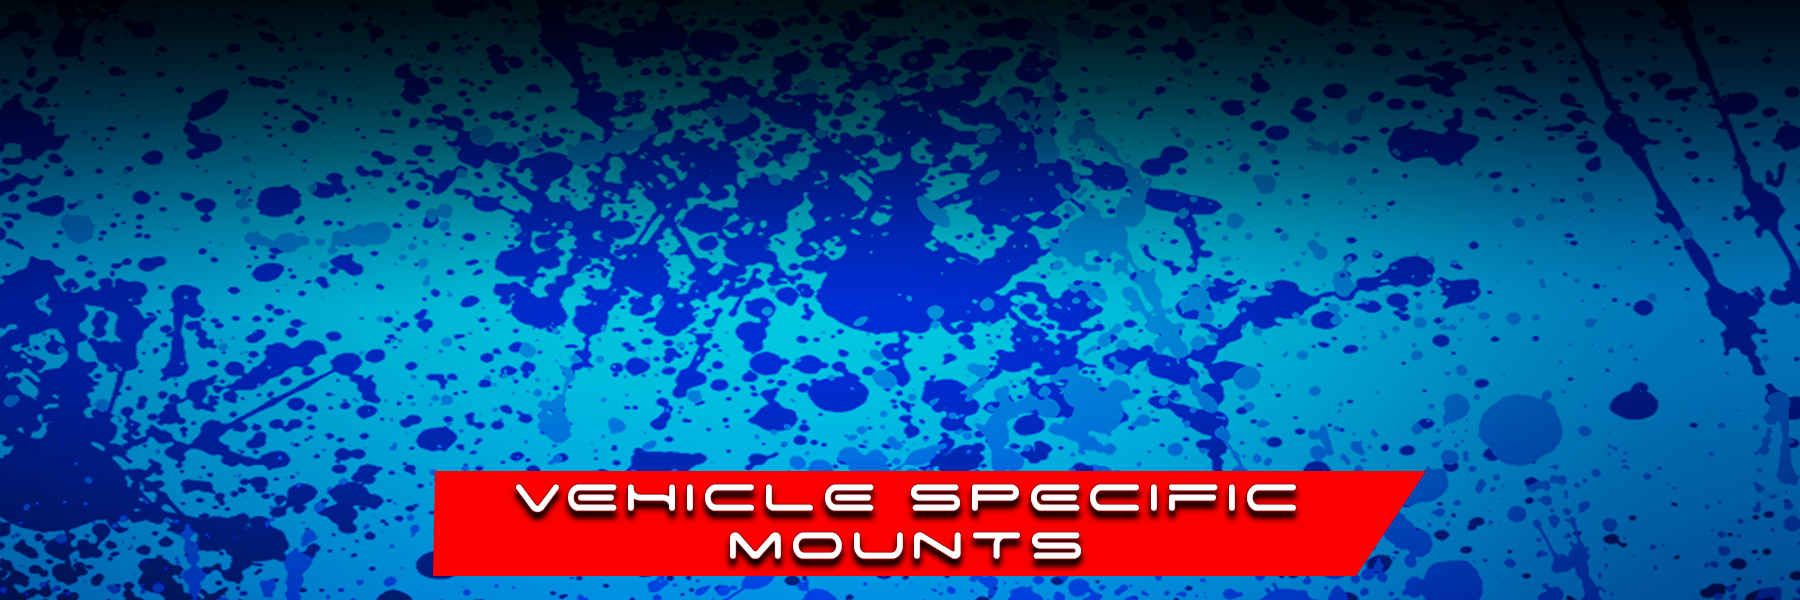 Vehicle Specific Mounts